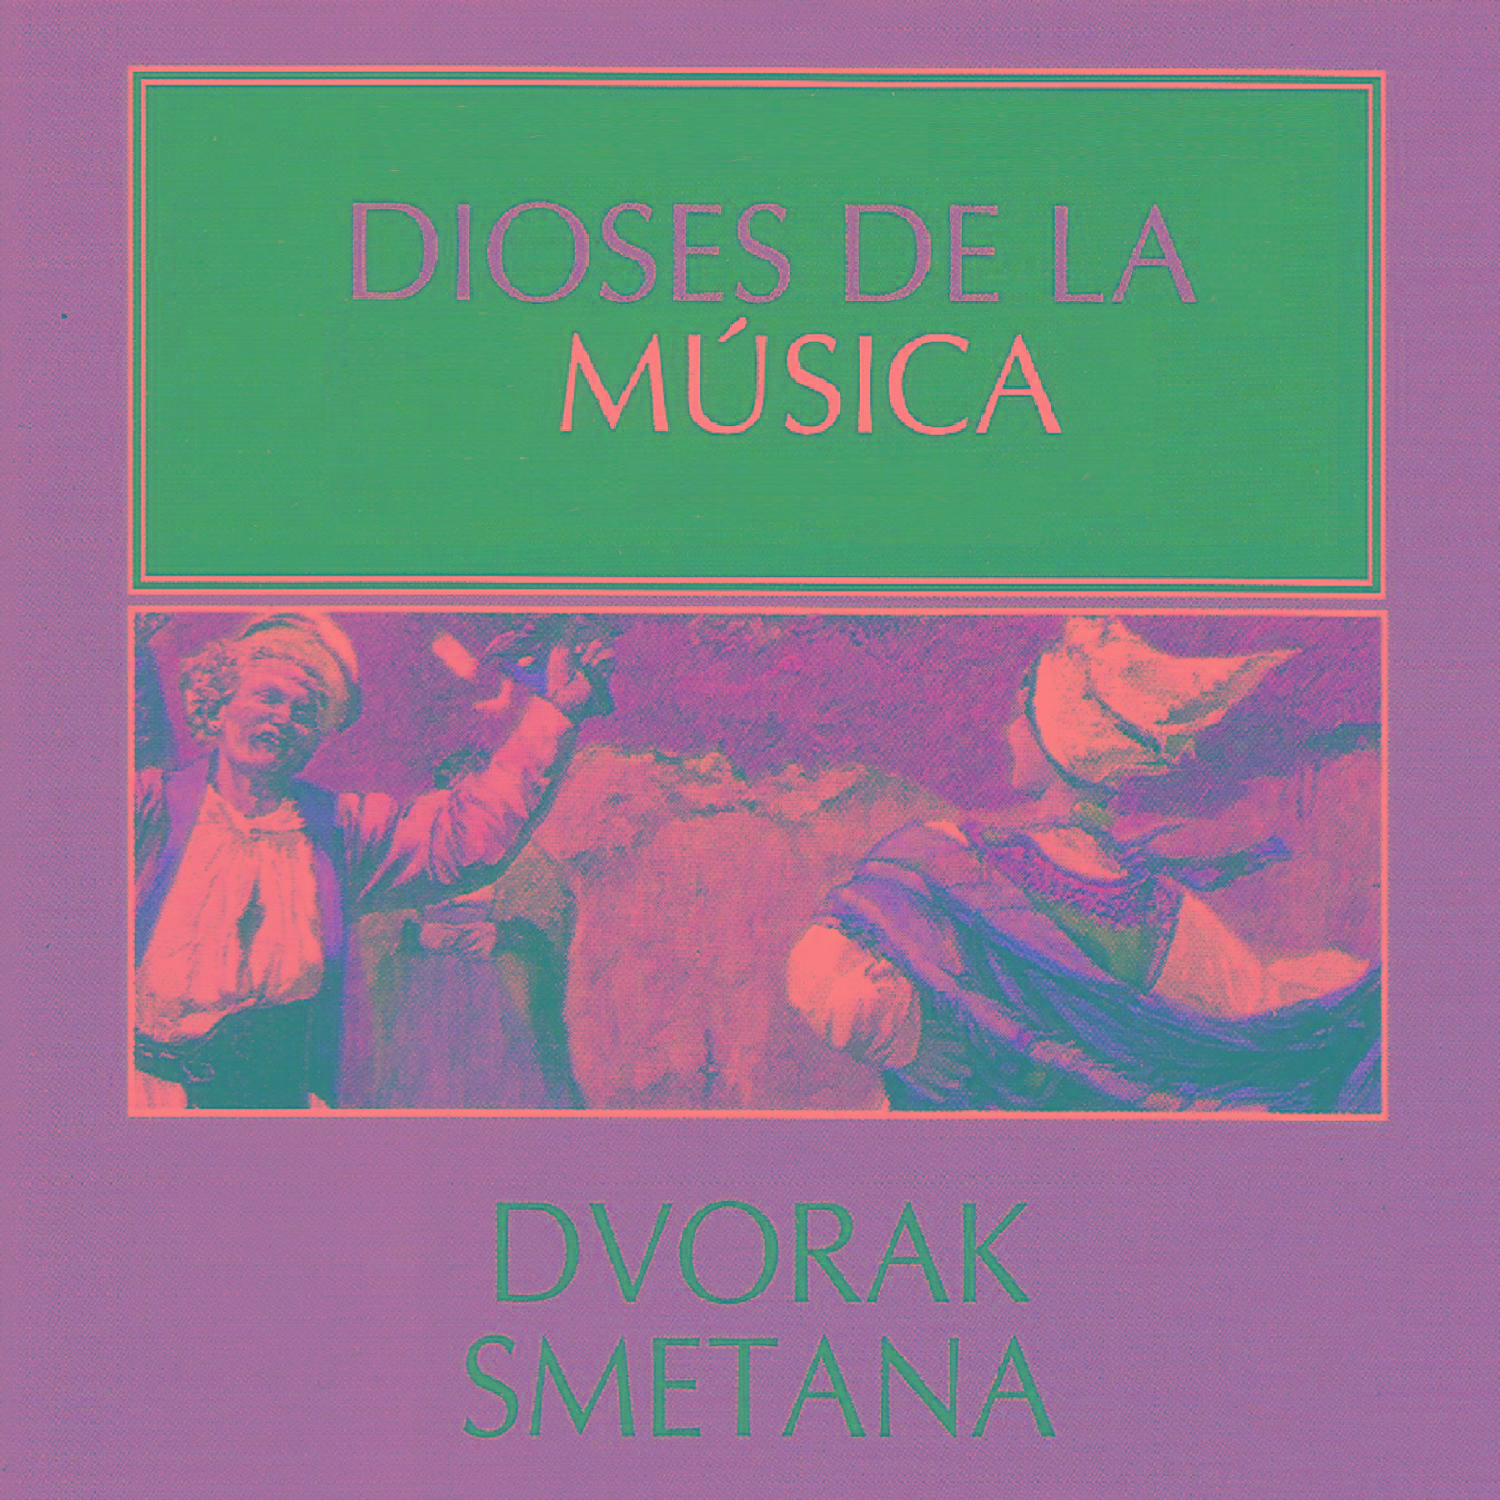 Dioses de la Mu sica  Dvorak, Smetana